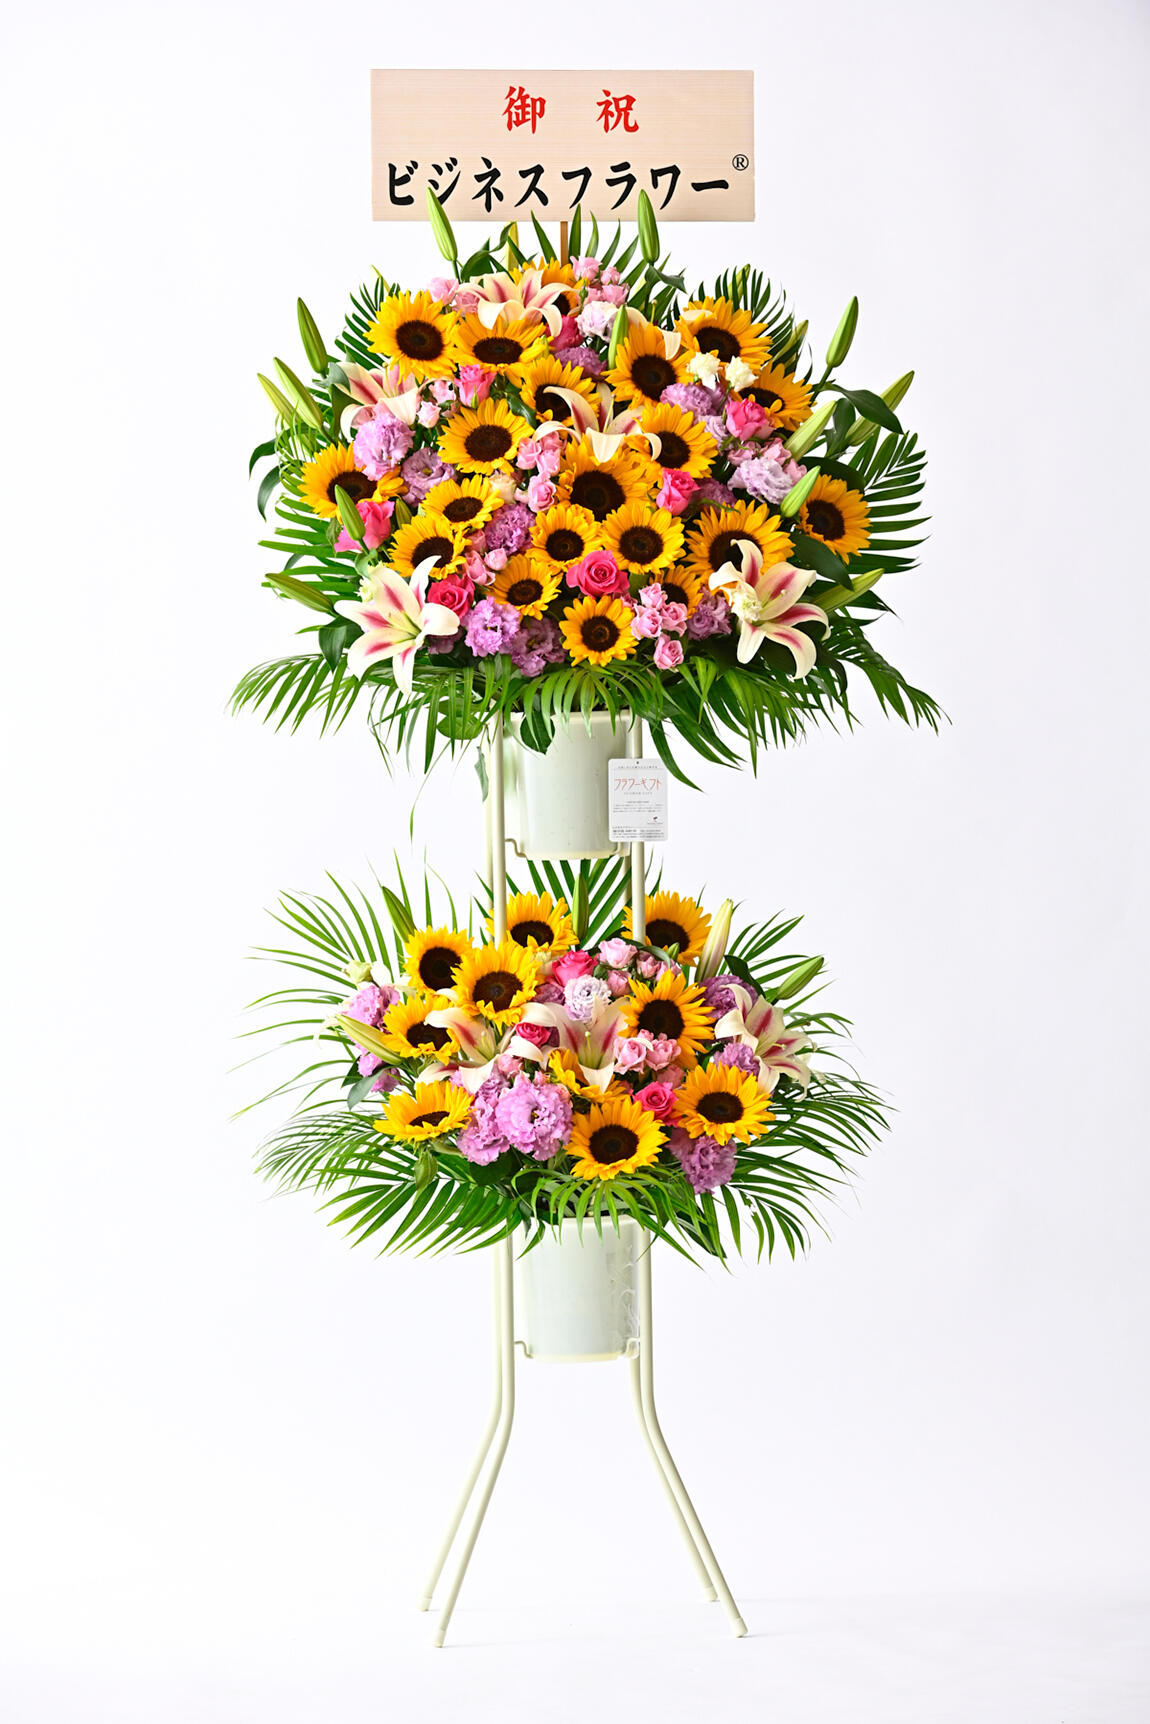 <p>もちろん、向日葵（ひまわり）ミックスのスタンド花商品にも立札を無料でお付けする事ができます。</p>